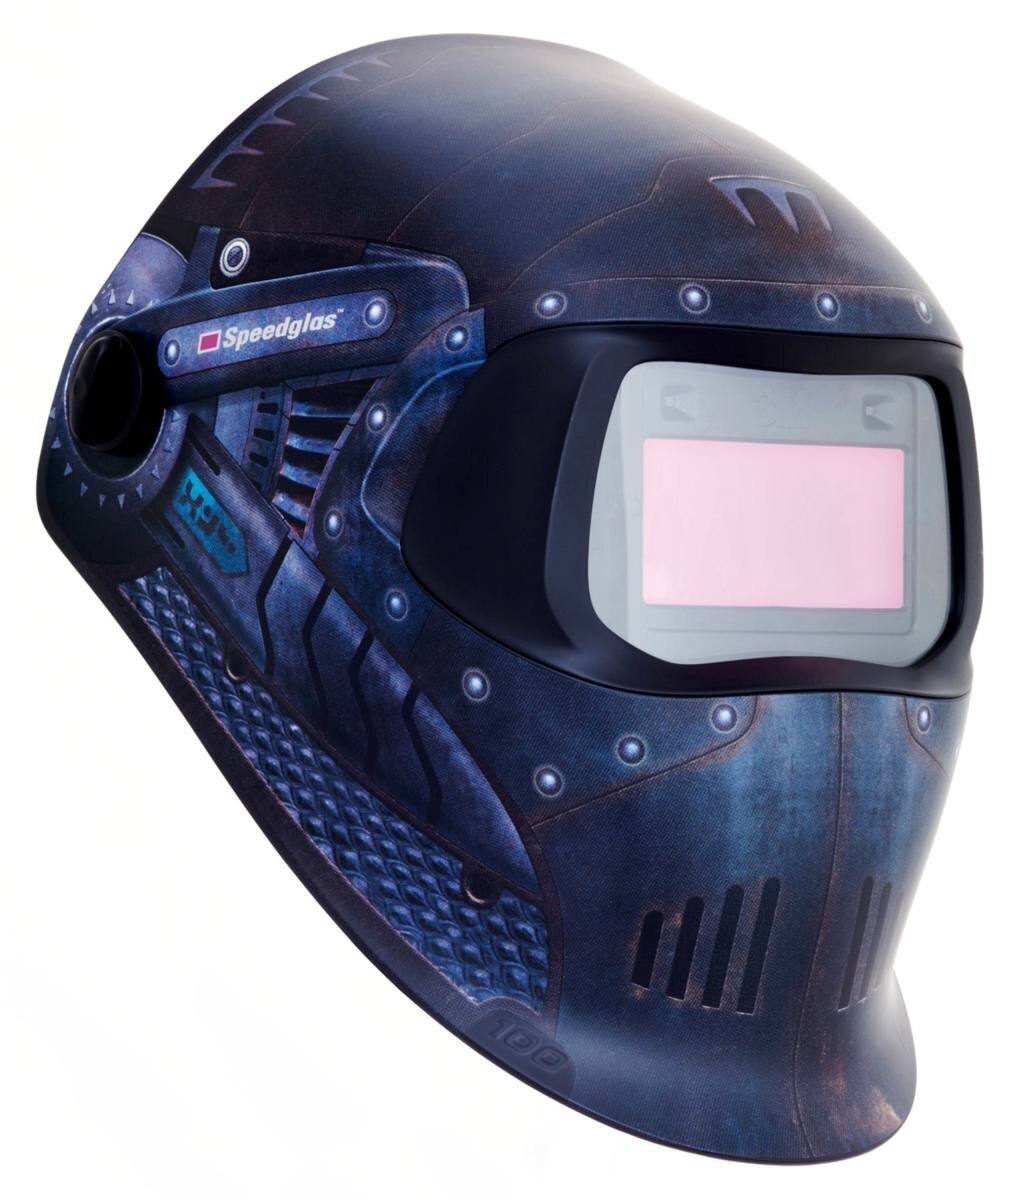 3M Speedglas 100V Schweißhelm Automatik Schweißer Helm DIN 8-12 Mig "Trojan Warrior" #751620